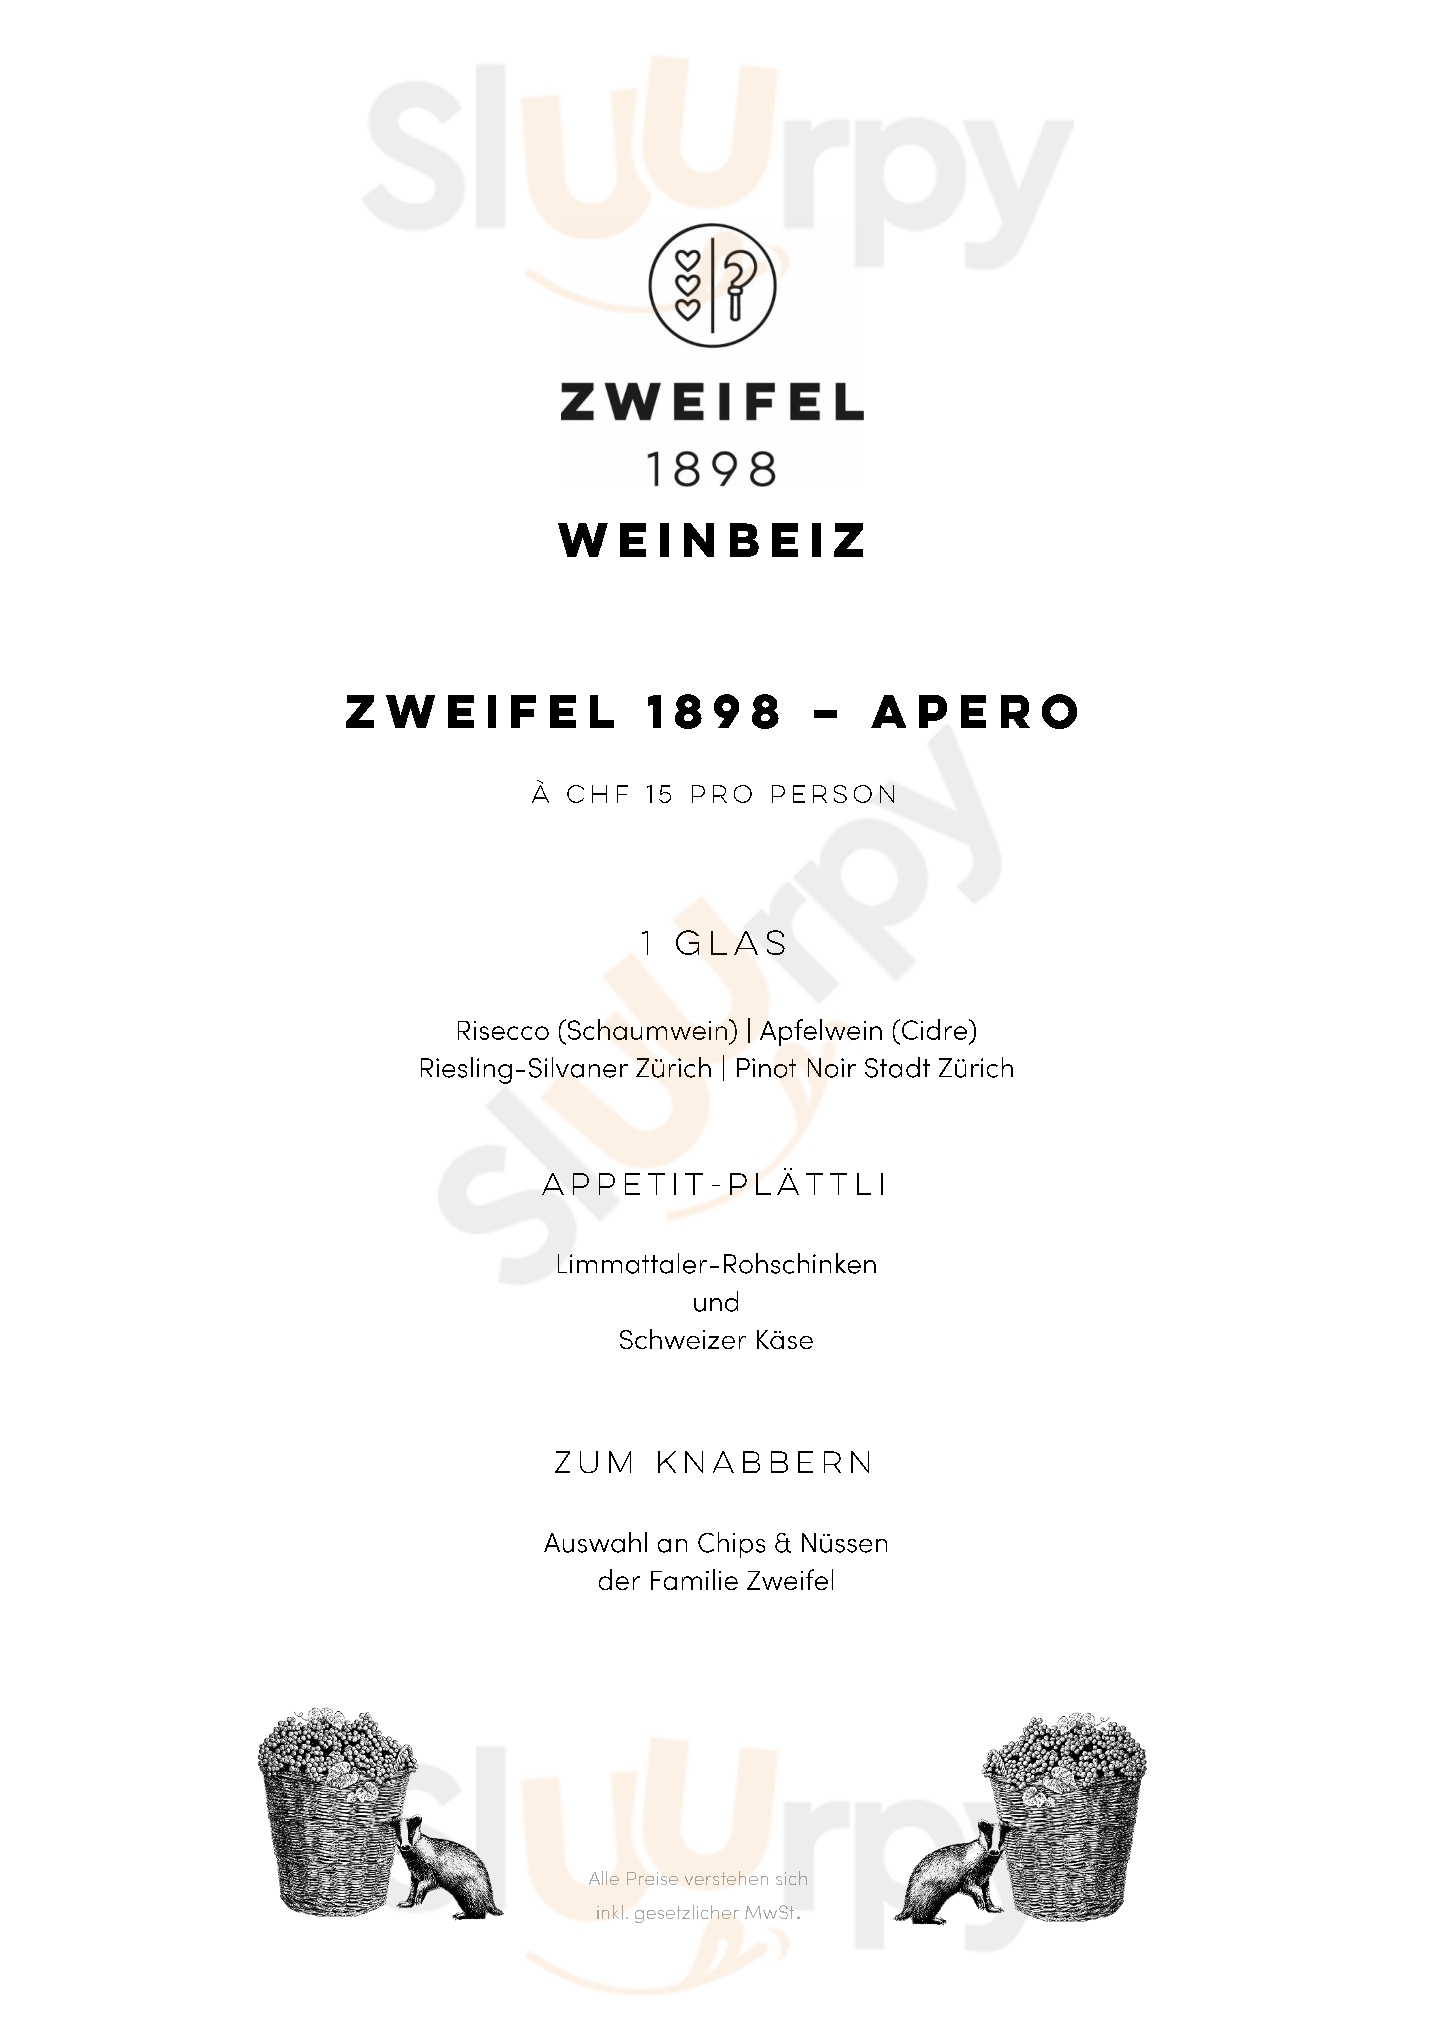 Zweifel 1898 Weinbeiz Zürich Menu - 1